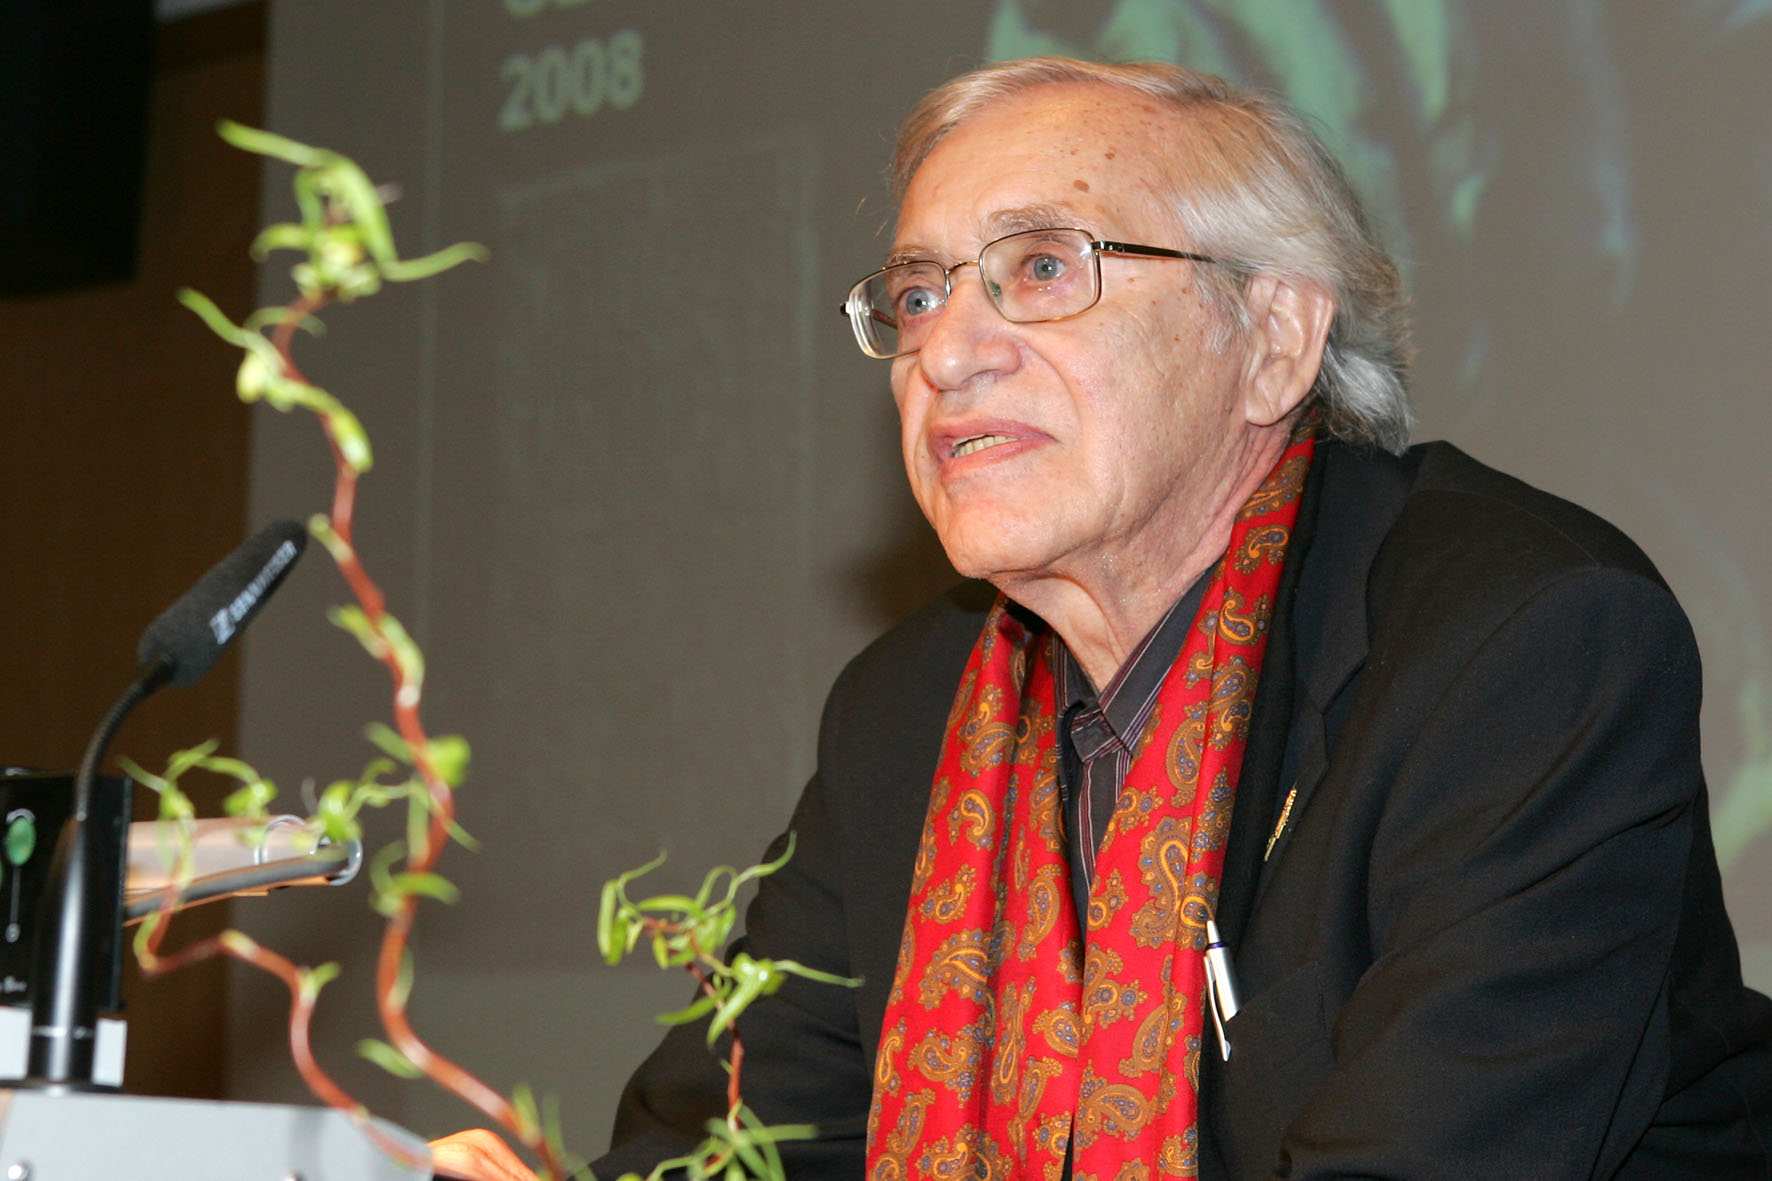 Dr. Nathan Durst bei der Gedenkveranstaltung am 27.01.2008 im Konferenzzentrum der Hannes-Seidel-Stiftung in München